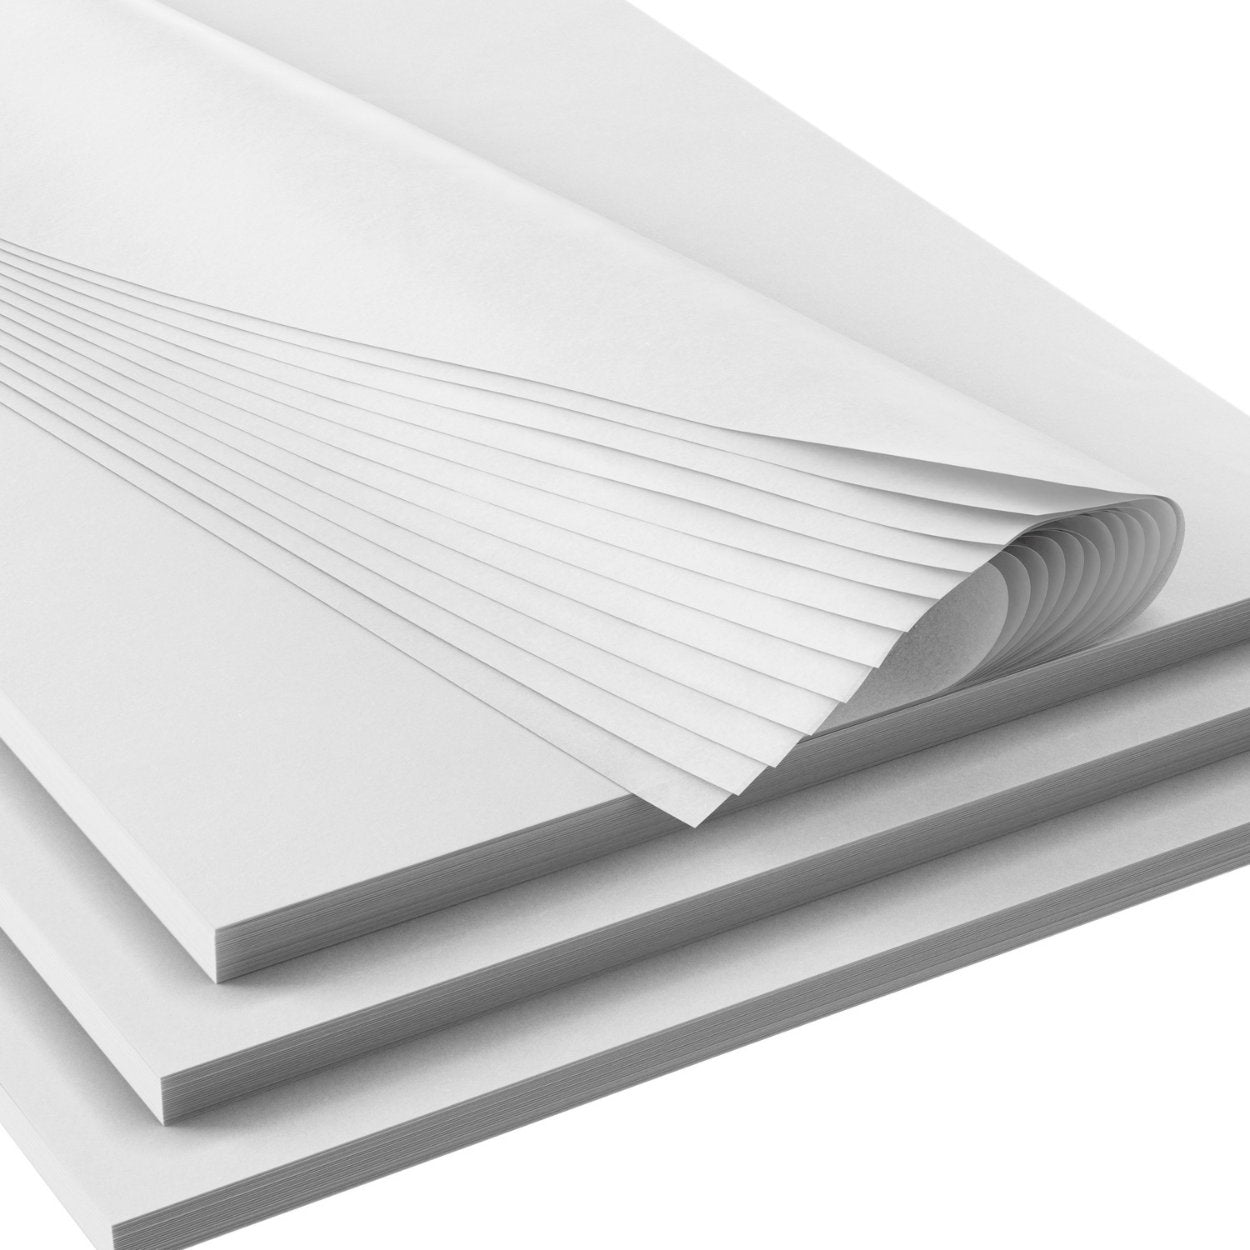 Bulk White Tissue Paper Sheets, 15x20 & 20x30